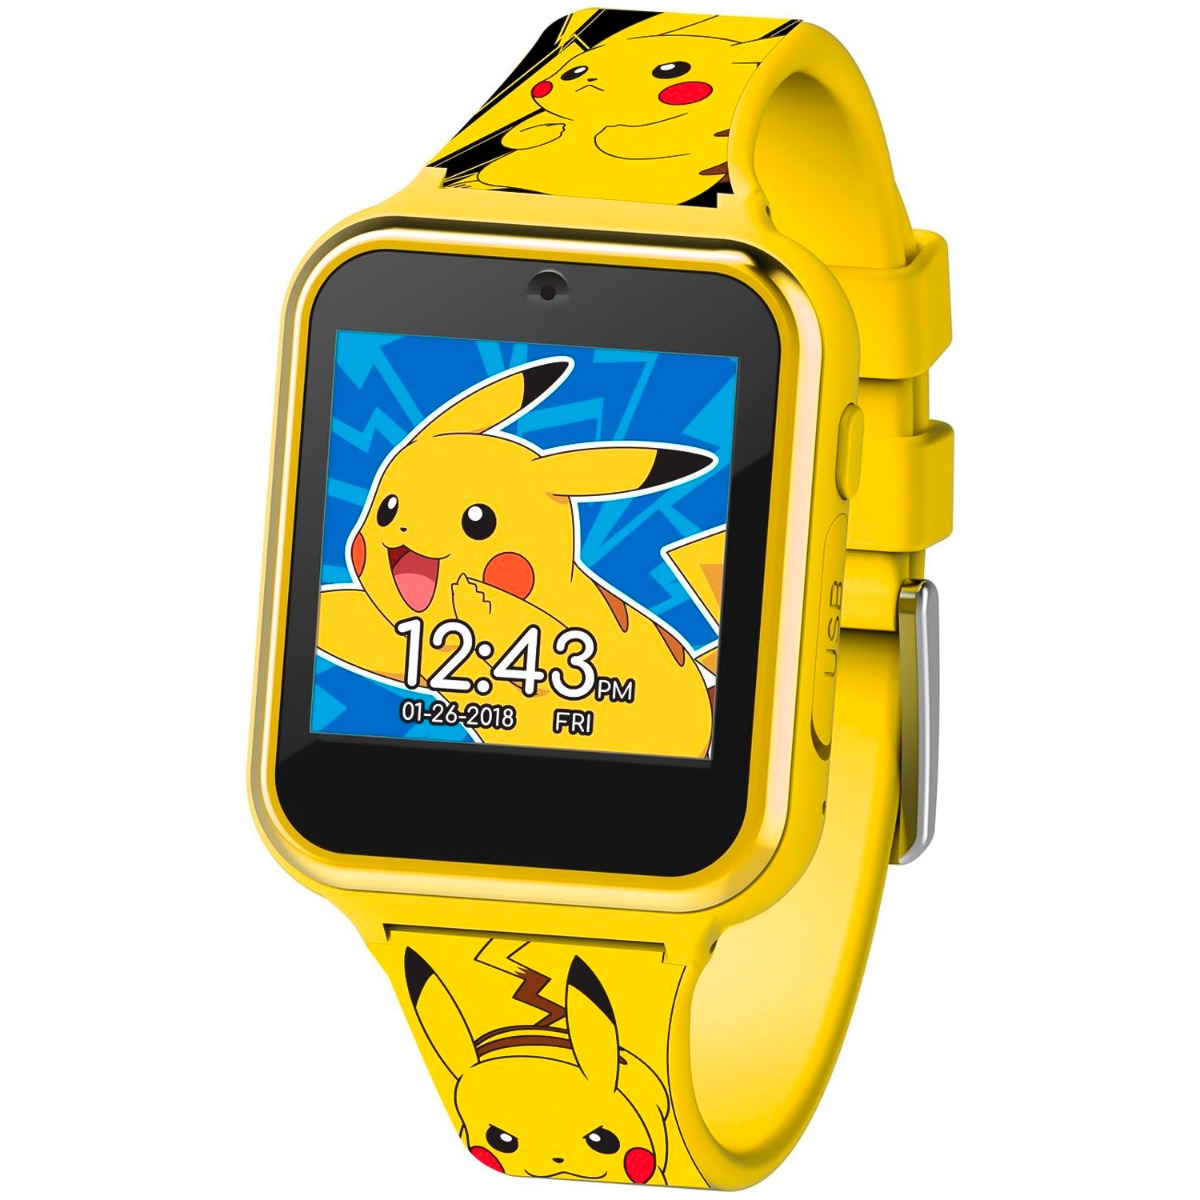 Andrew Halliday titel Økonomi Pokémon Smartwatch til børn | Gult design fra Accutime.